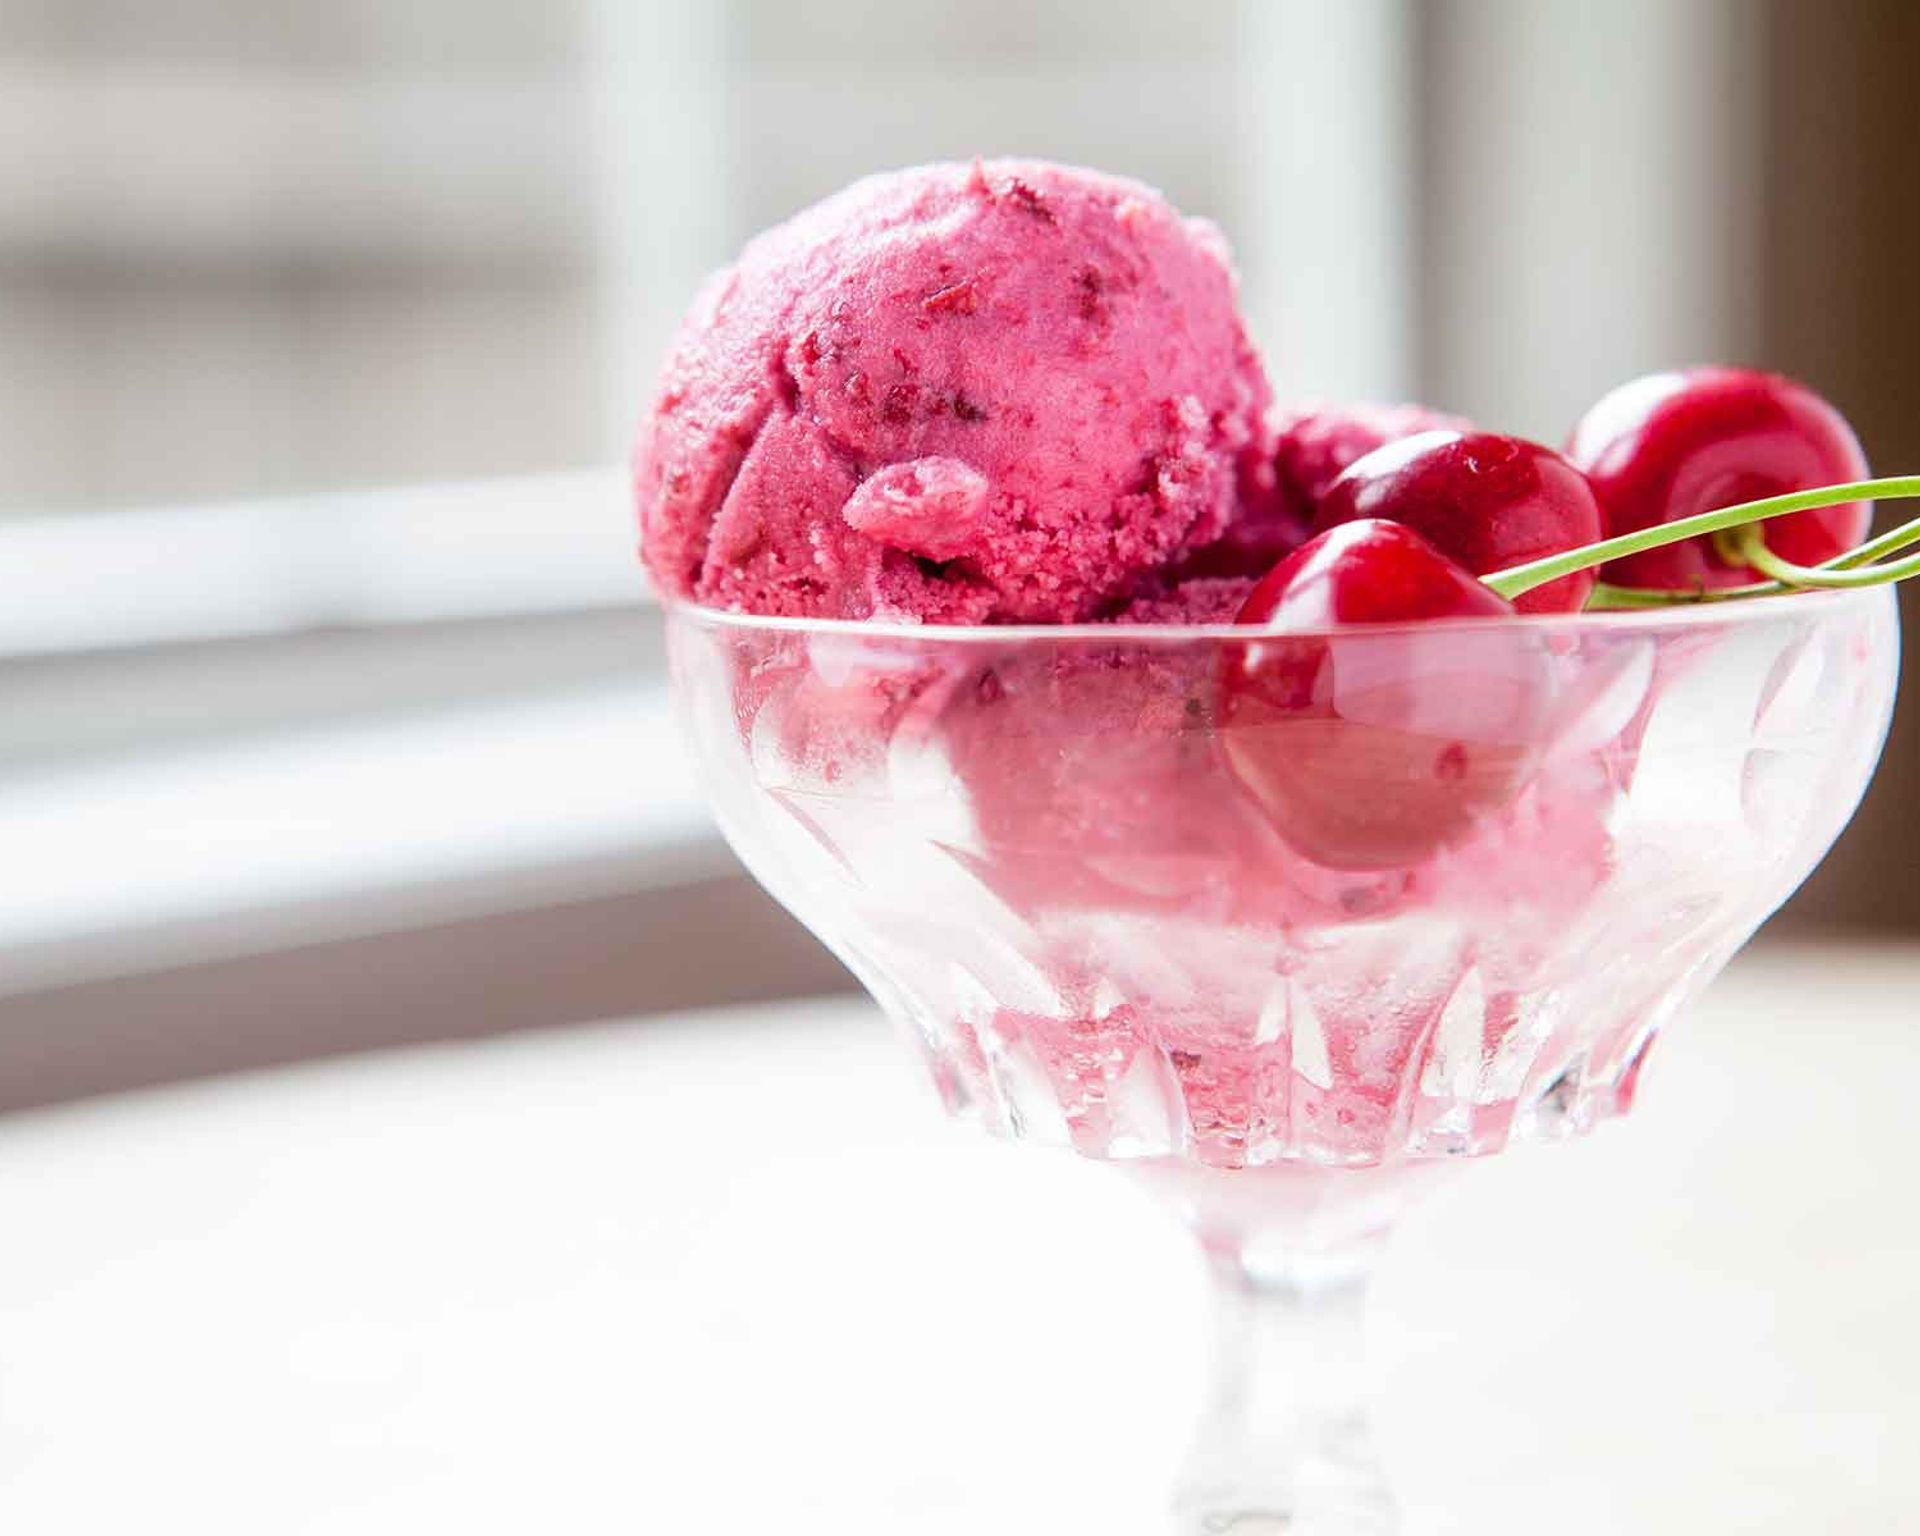 Jogurtová zmrzlina s višňami v sklenom pohári